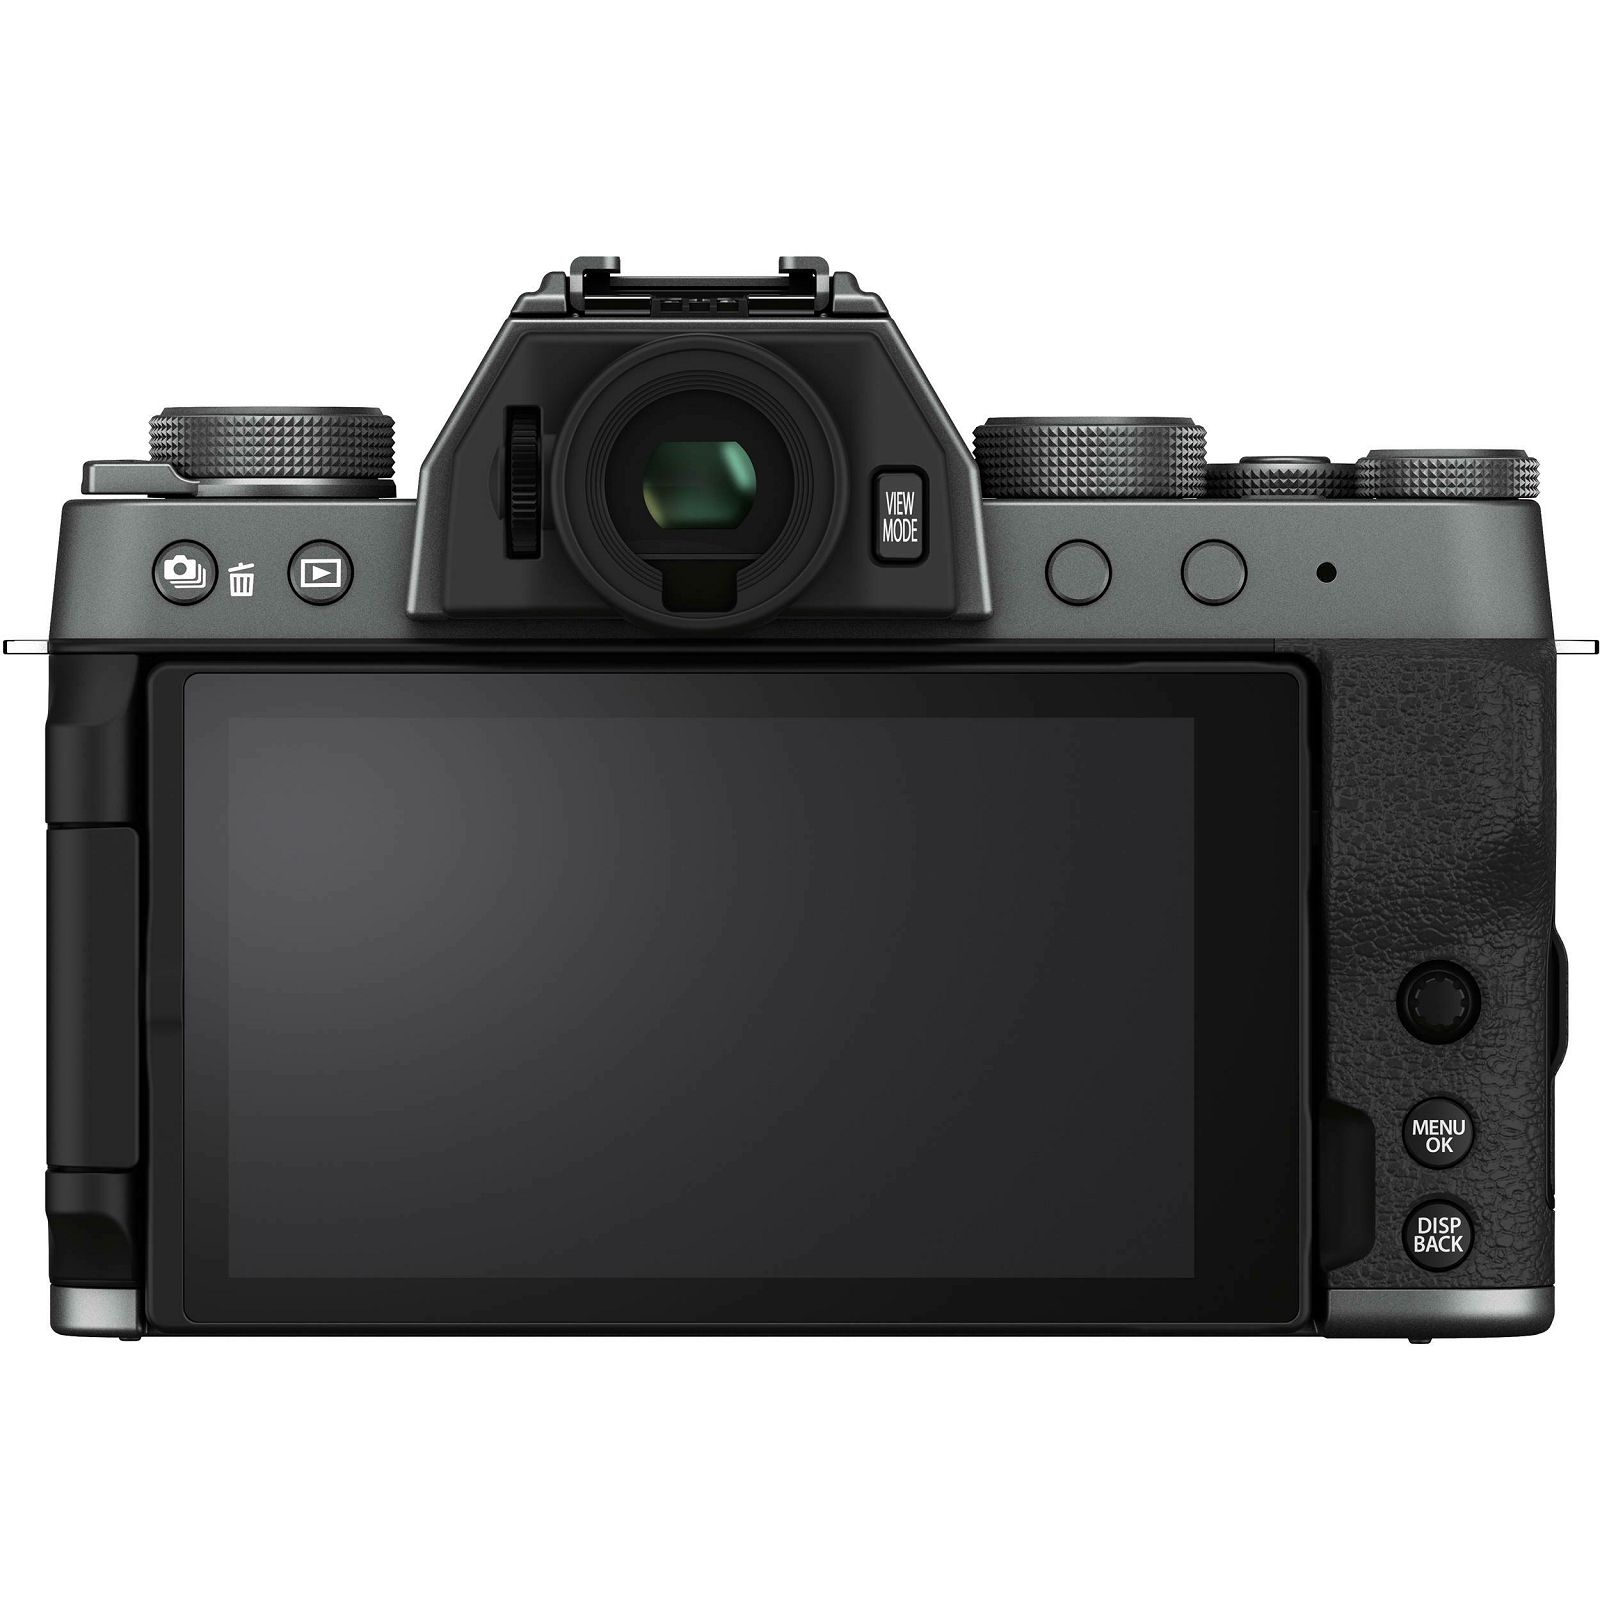 Fujifilm X-T200 + XC 15-45mm f/3.5-5.6 OIS PZ Dark Silver KIT Tamno sivi Fuji digitalni mirrorless fotoaparat s objektivom (16645955)